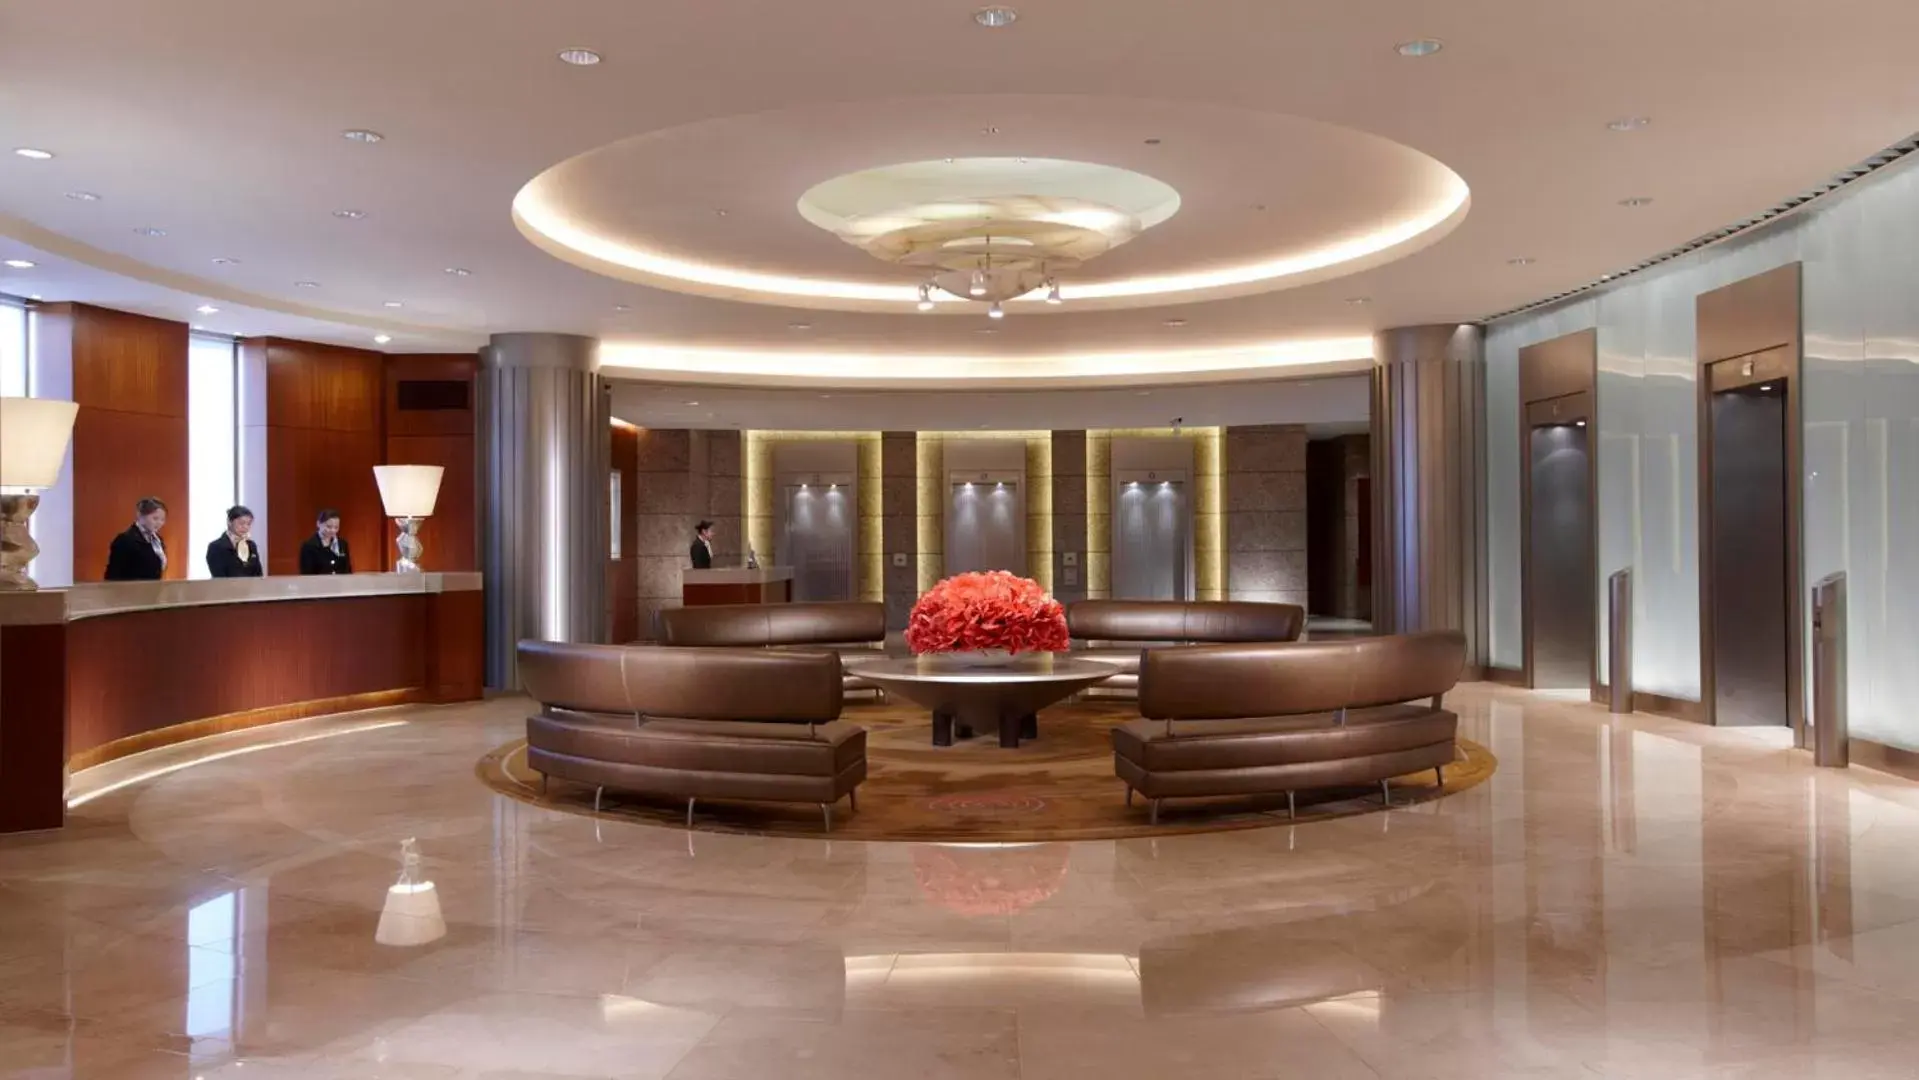 Lobby or reception, Lobby/Reception in Ambassador Hotel Hsinchu